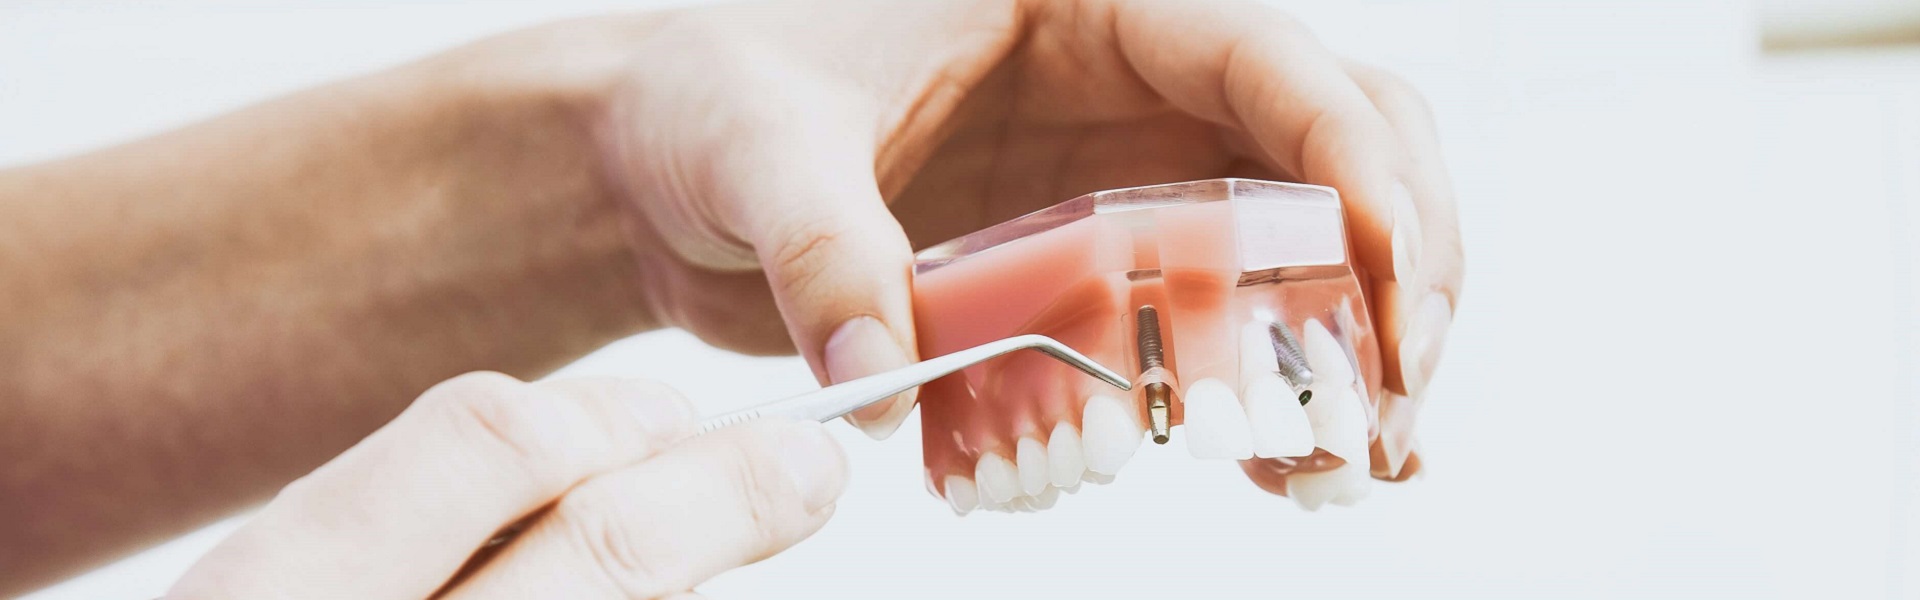 Fizikalna terapija | Zubni implanti Beograd